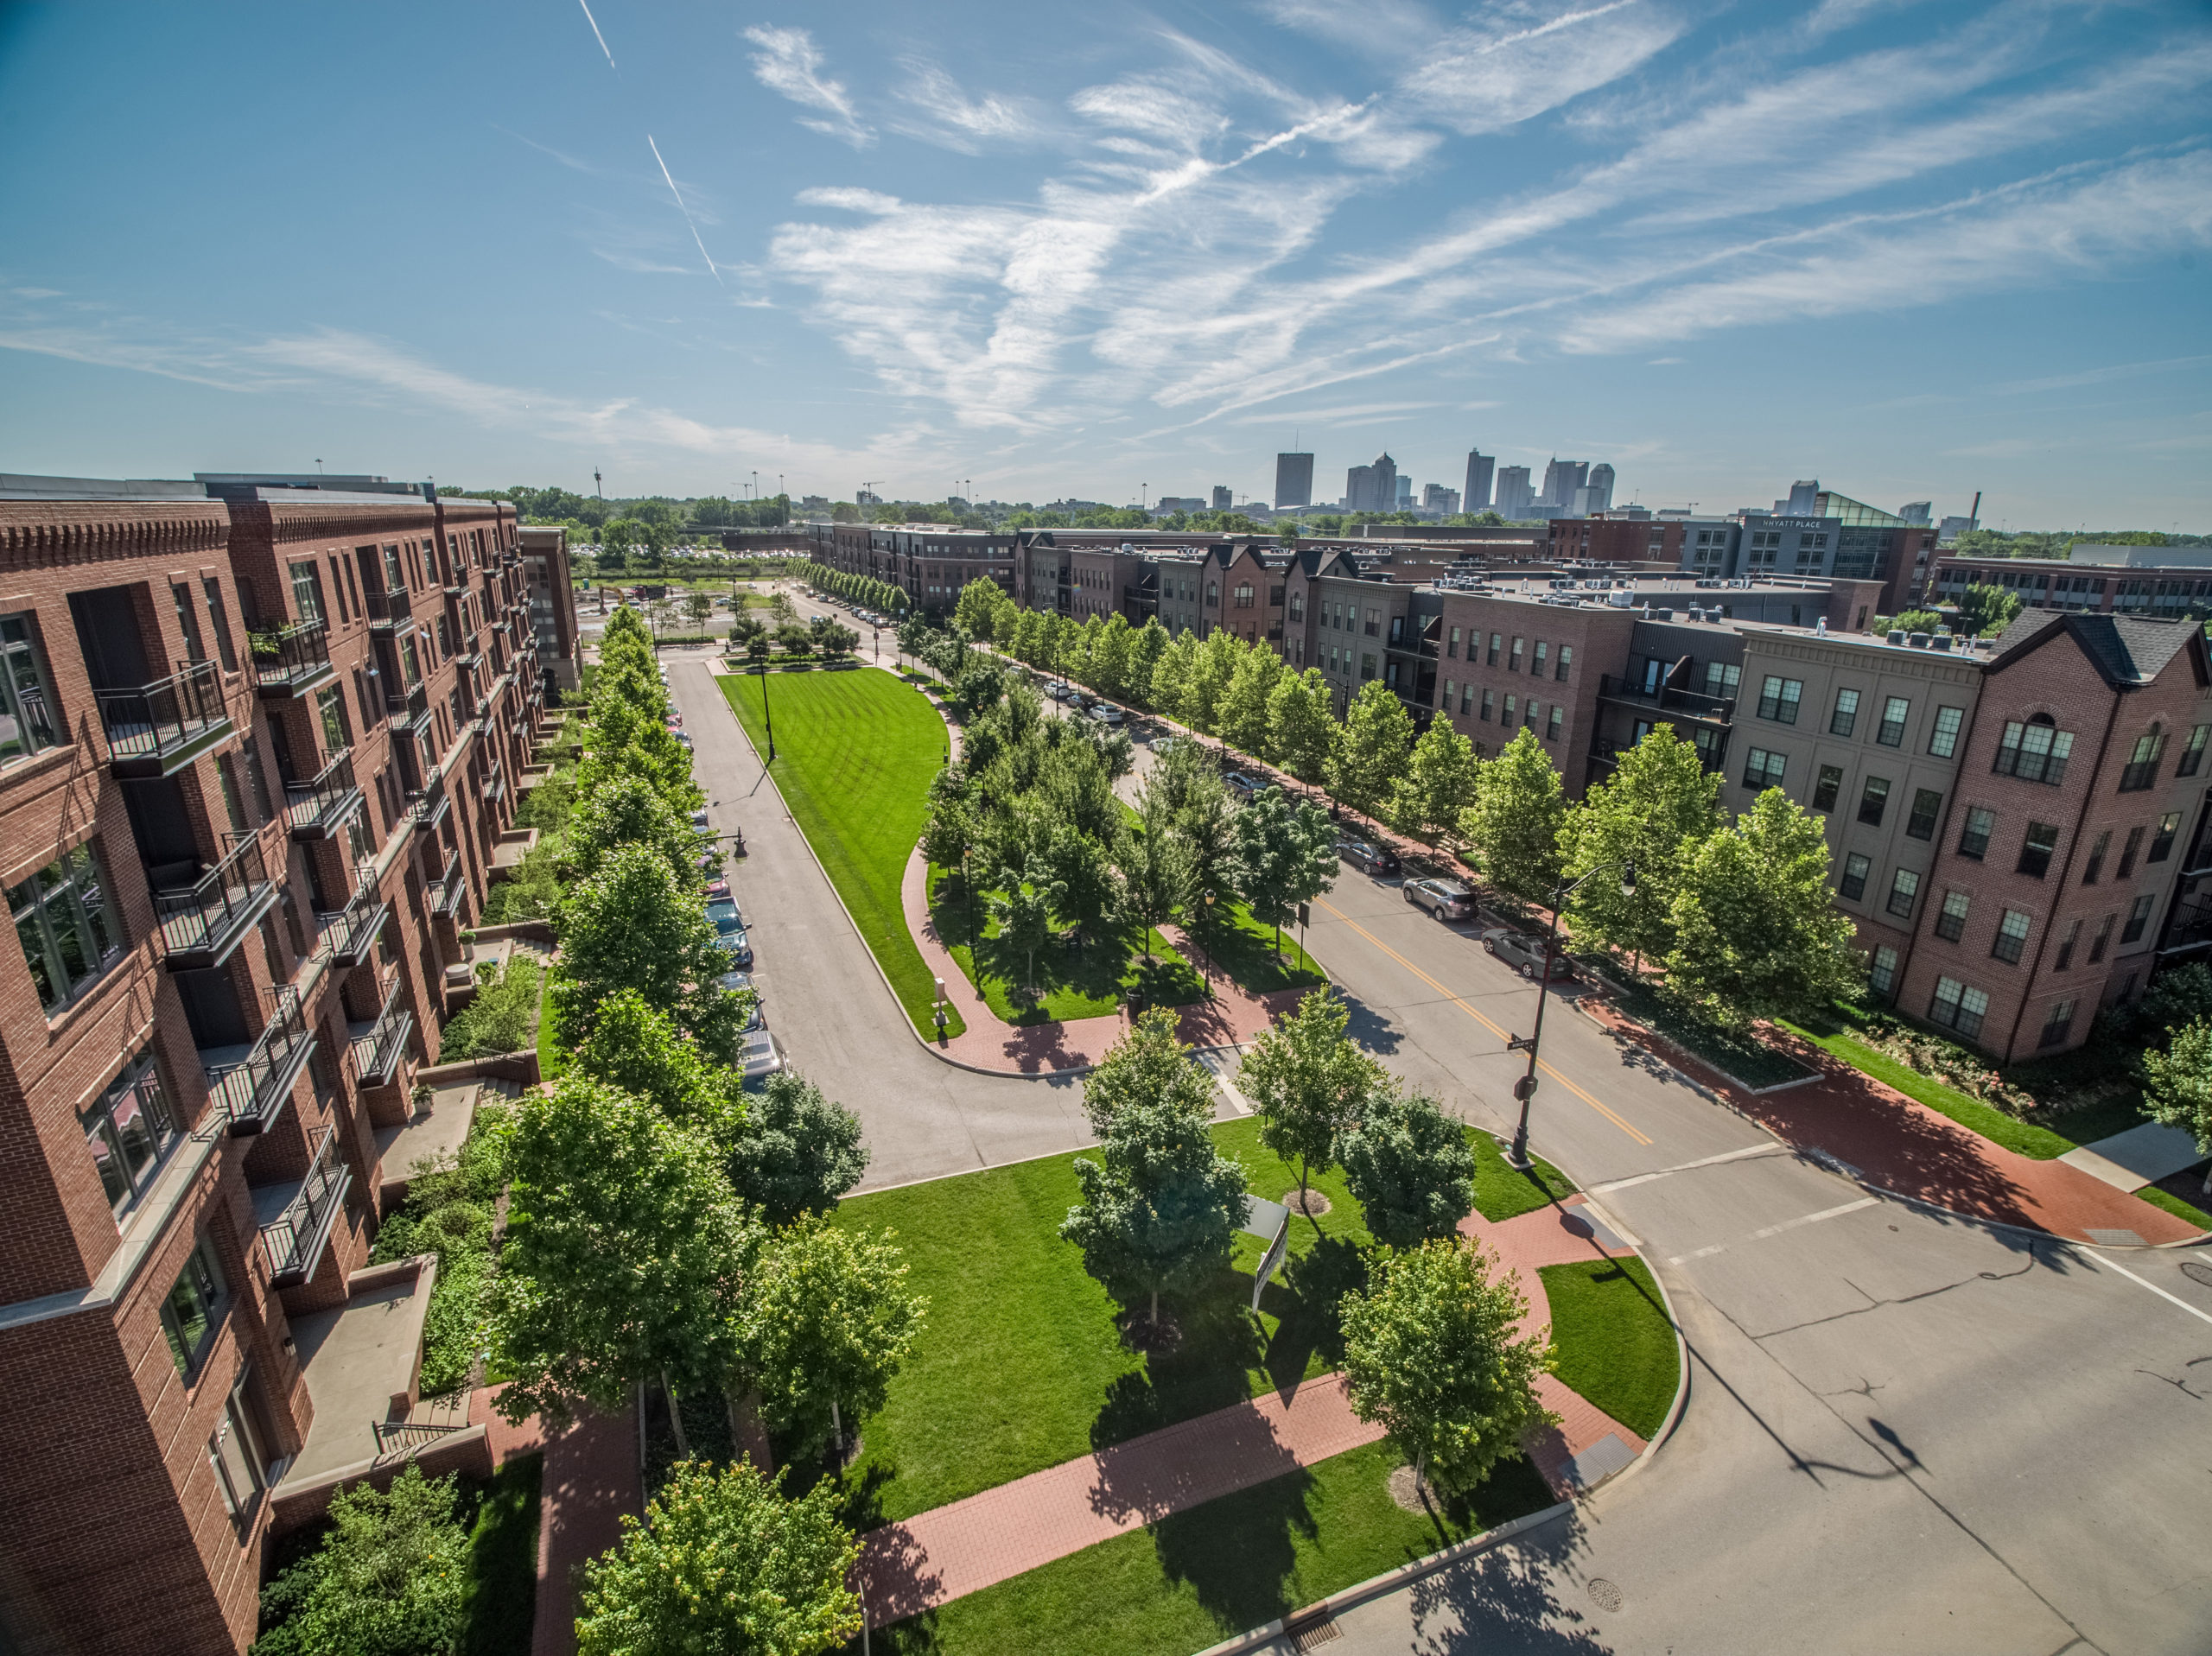 Grandview Yard Named Largest LEED Neighborhood Development Site in US